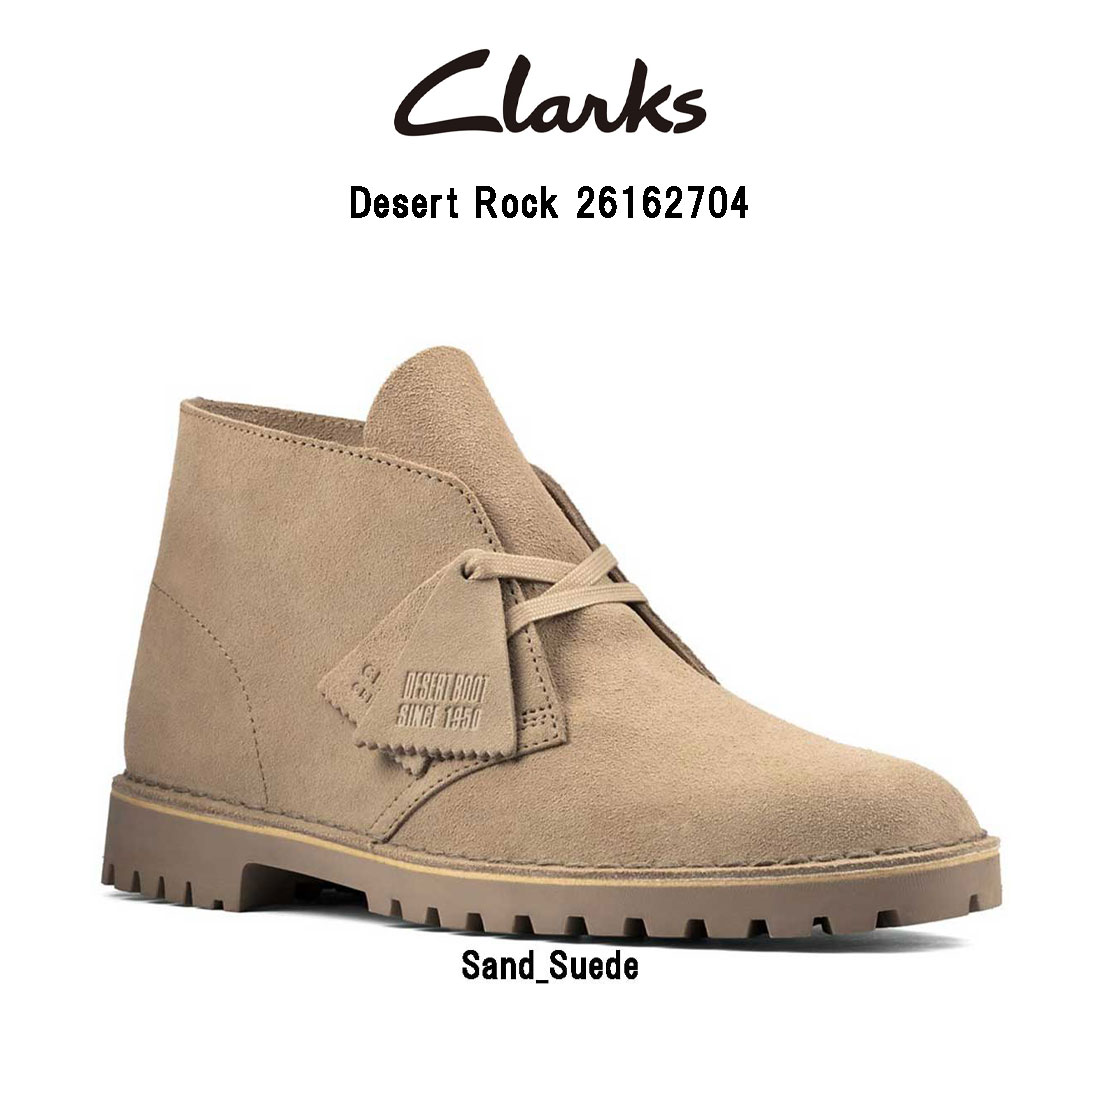 送料無料 ブランド オシャレ ギフト プレゼント CLARKS(クラークス)メンズ スエード ハイカット レースアップ マウンテン ブーツ スタンダード シューズ Desert Rock 26162704